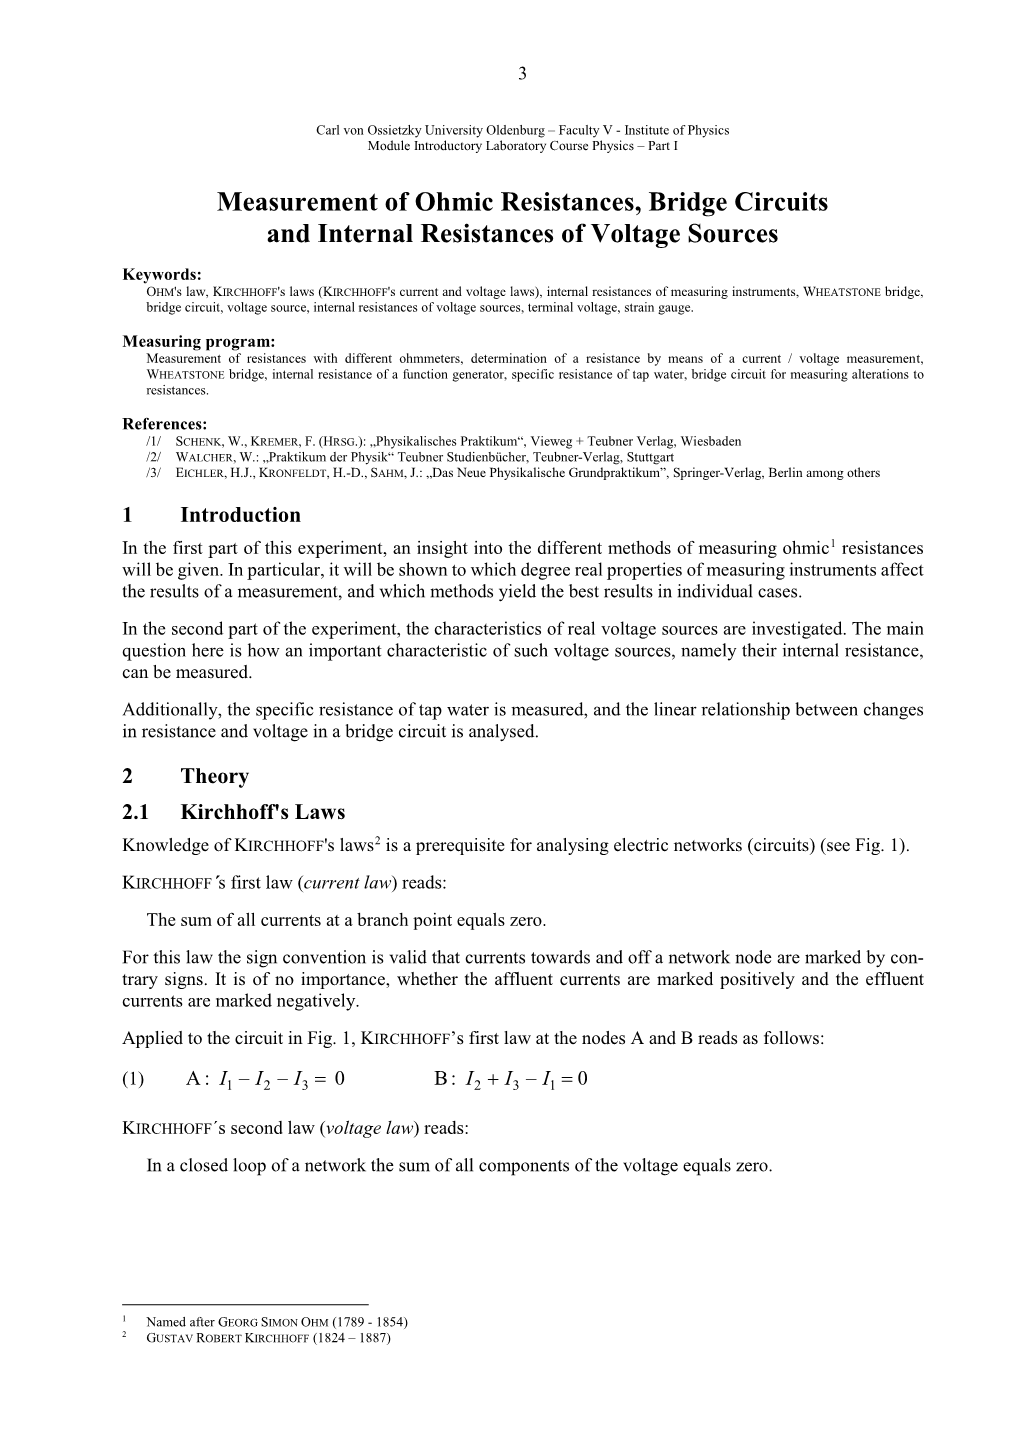 Measurement of Ohmic Resistances, Bridge Circuits and Internal Resistances of Voltage Sources